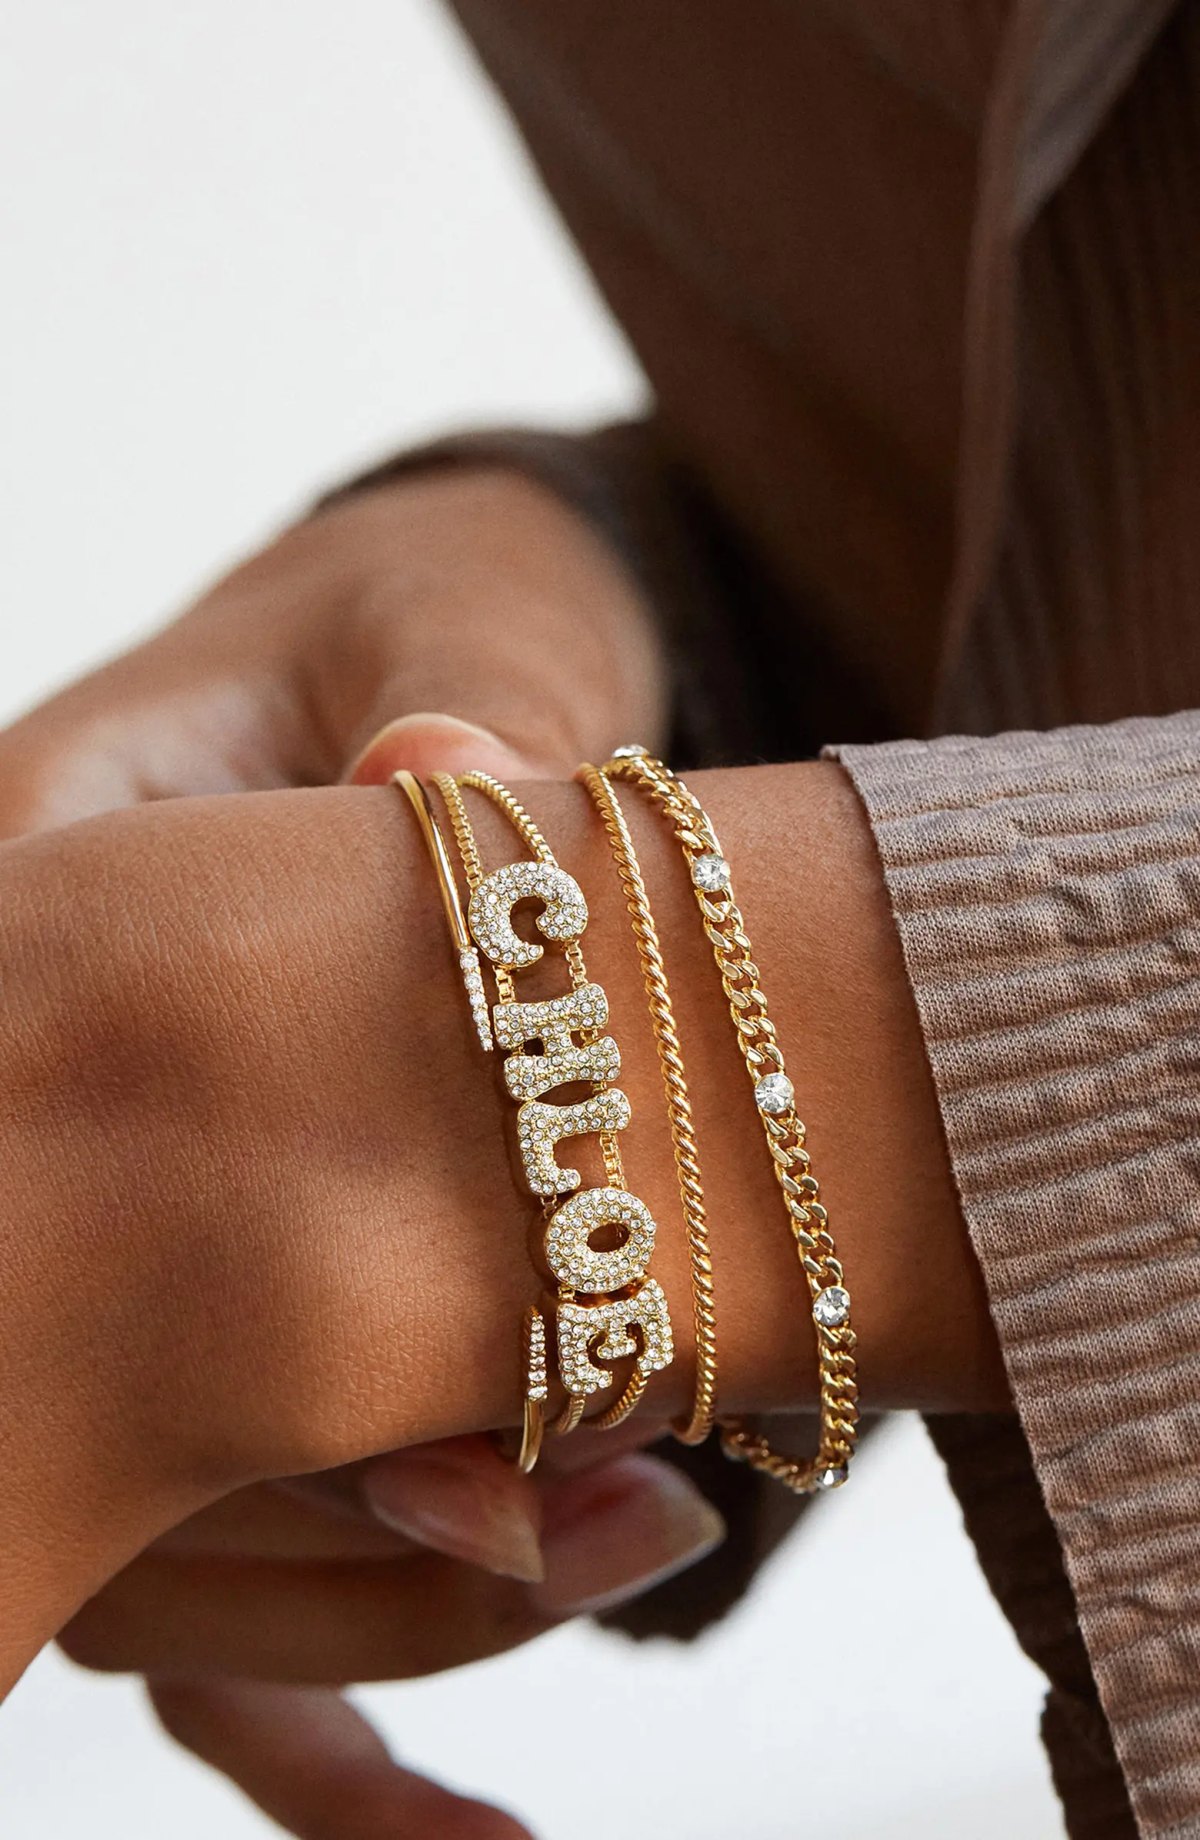 personalized charm bracelet